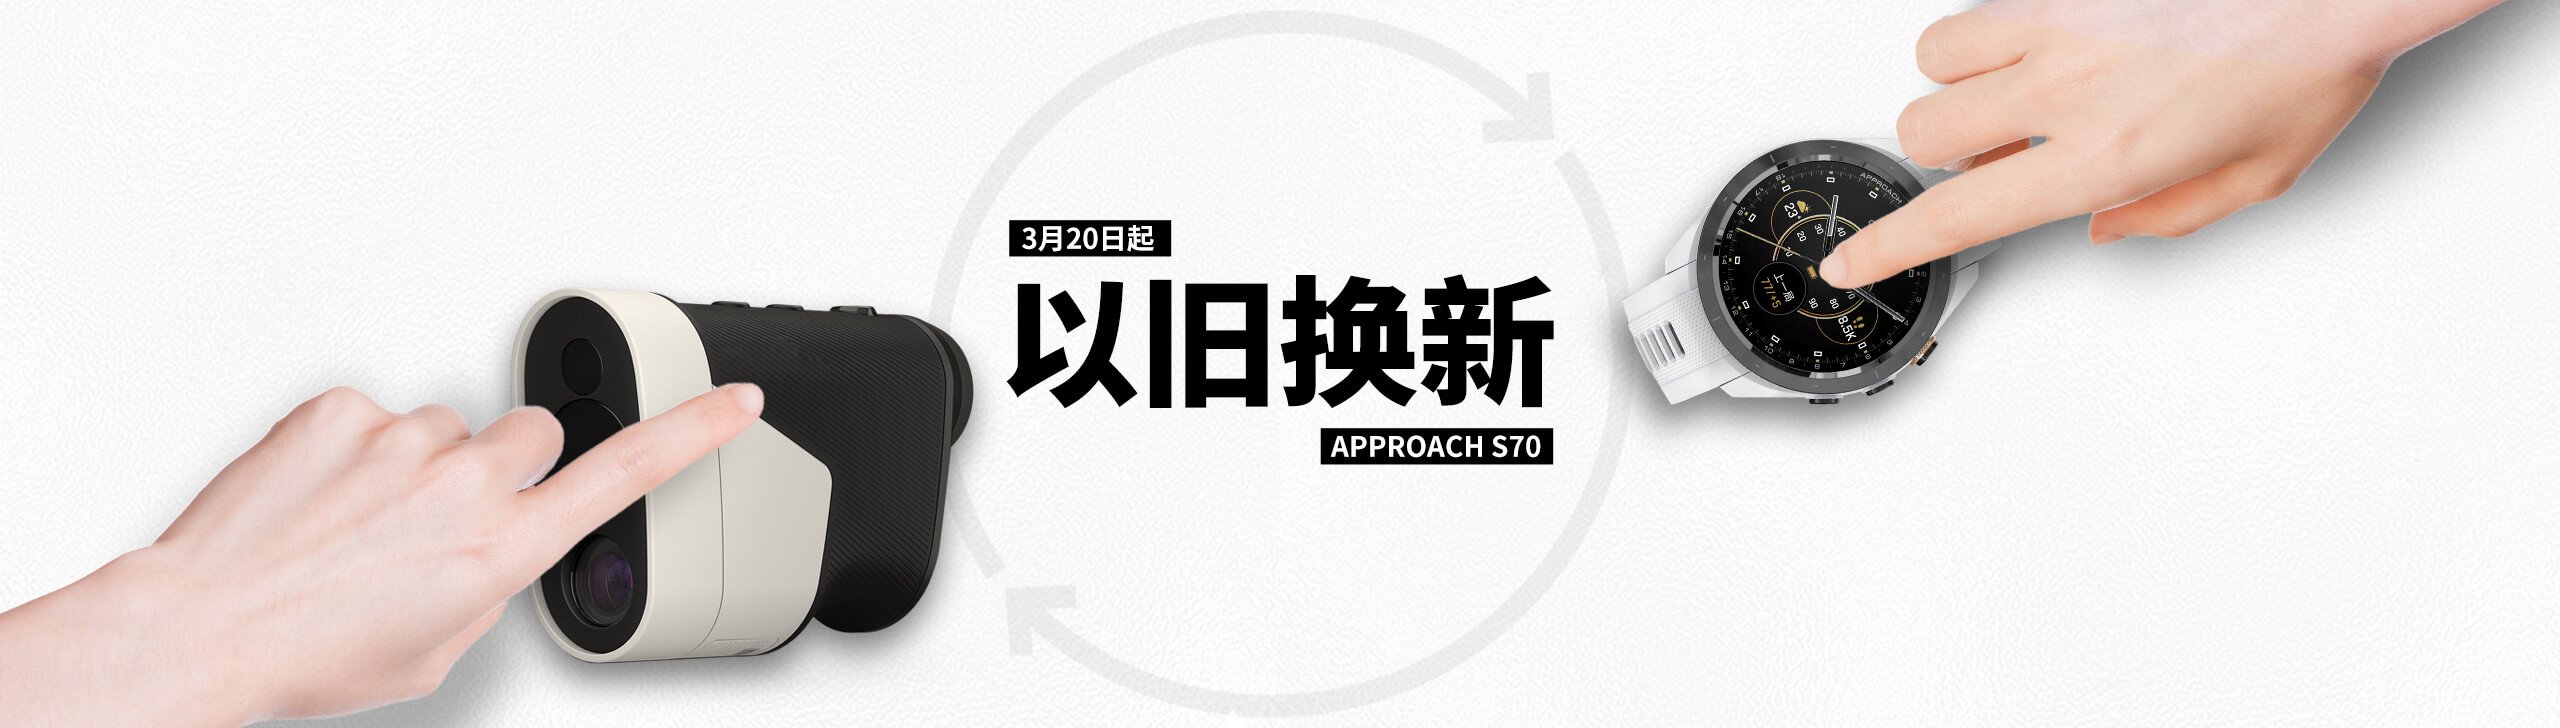 购 Approach S70 享换新补贴 - 任意高尔夫测距产品补贴千元！